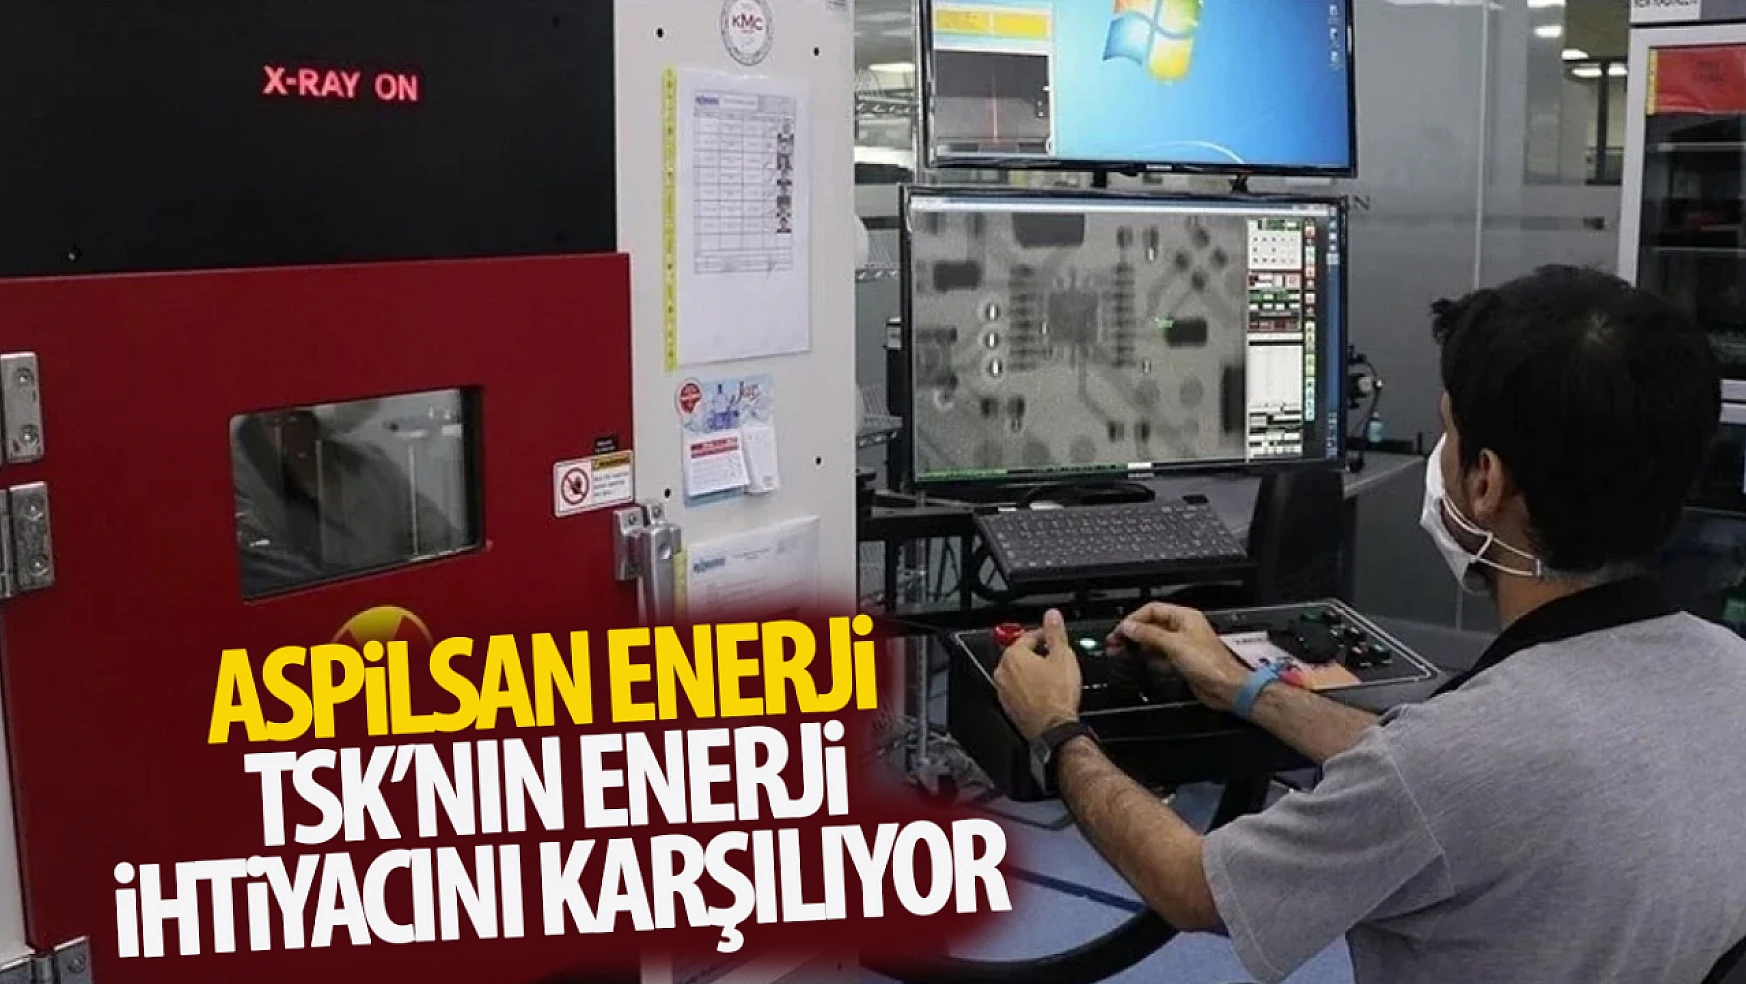 ASPİLSAN Enerji, Türk Silahlı Kuvvetlerinin enerji ihtiyacını karşılıyor